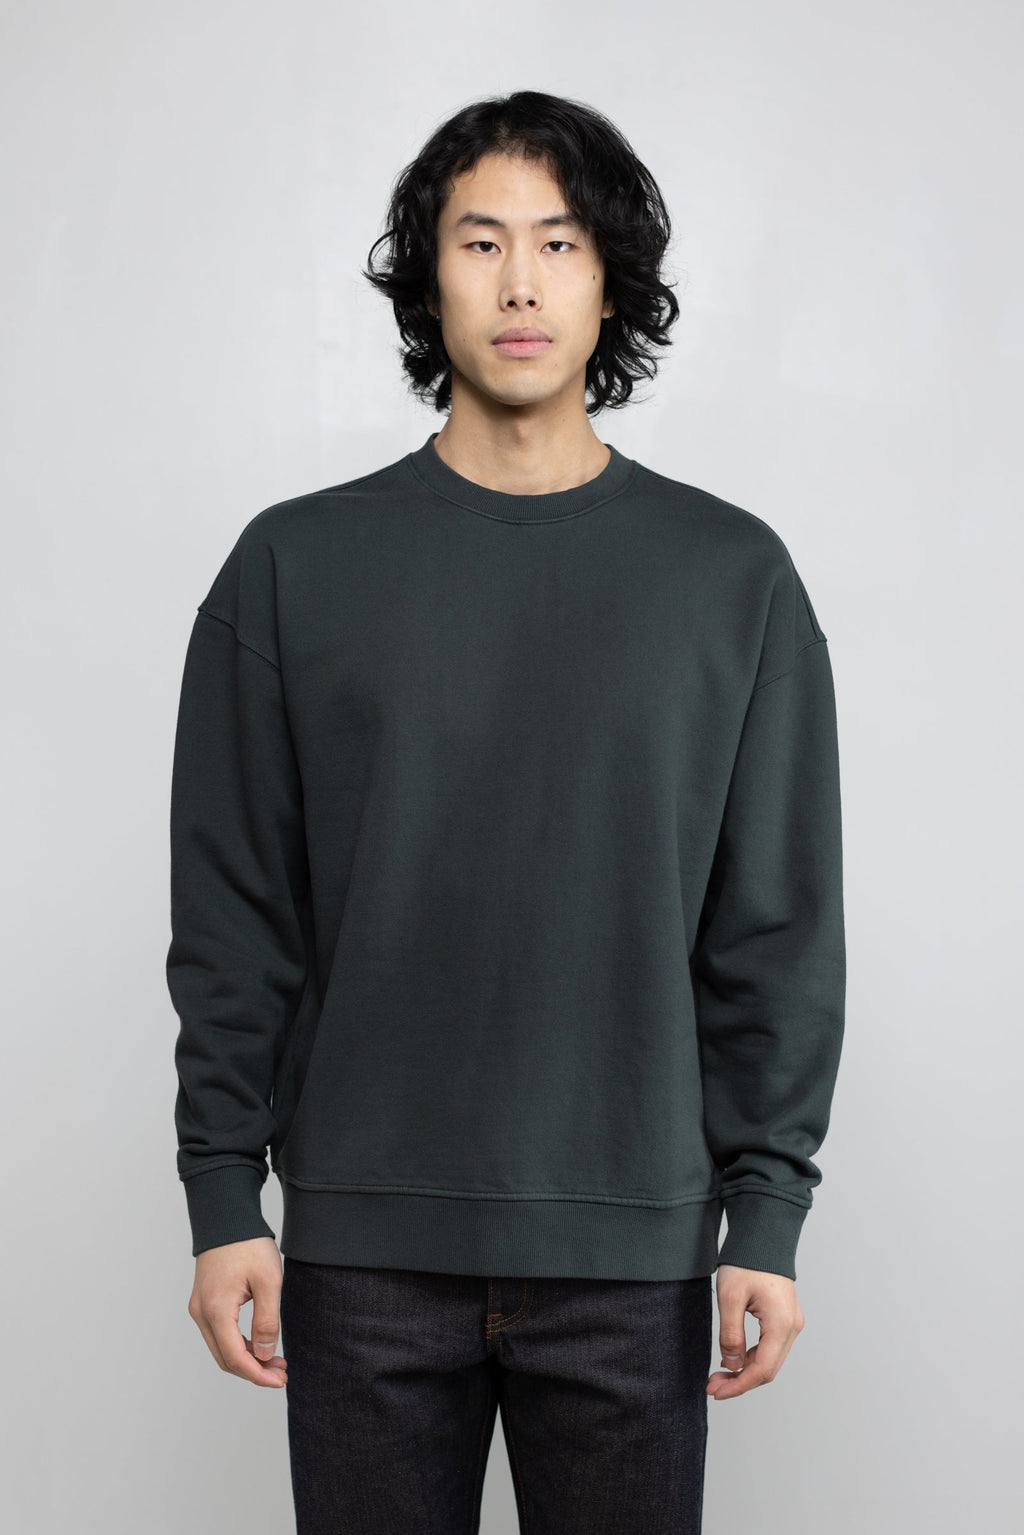 Cotton Fleece Sweatshirt in Hunter Green 02